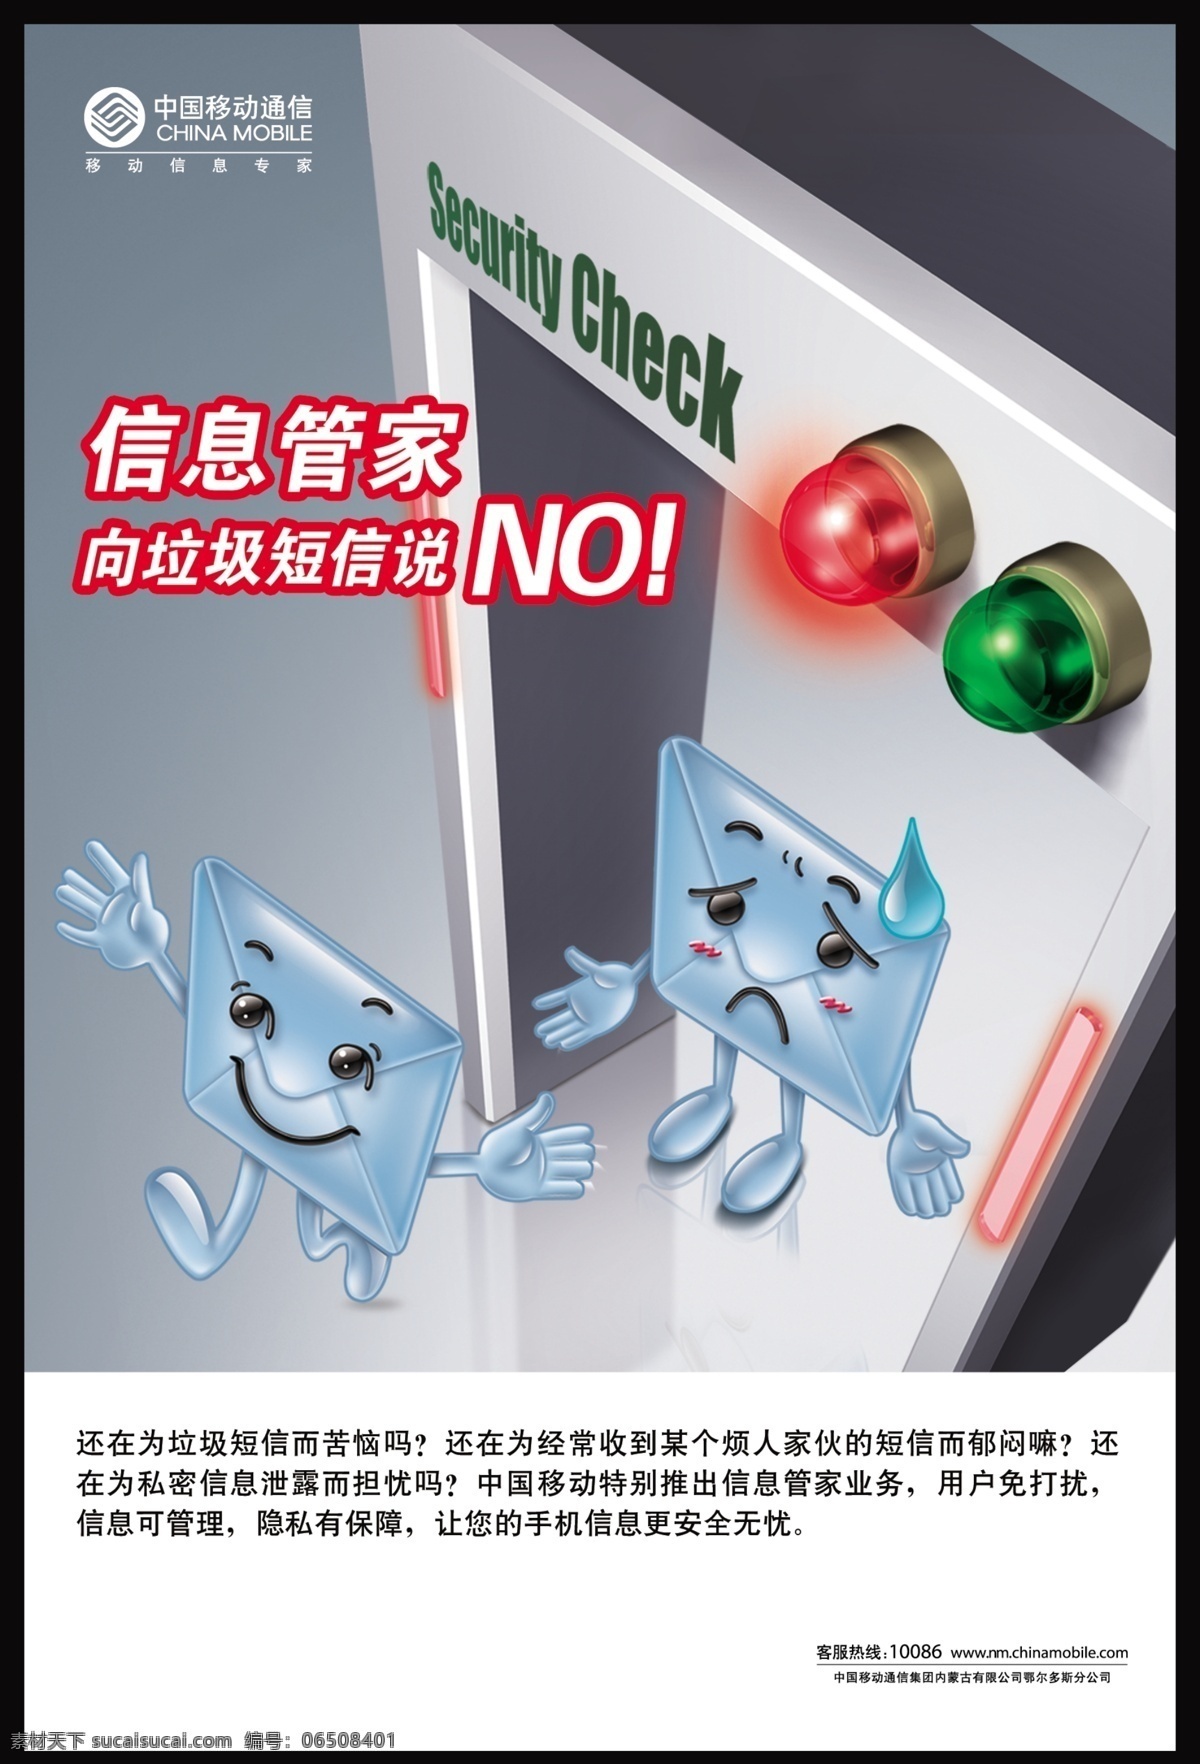 报警 短信 管家 广告设计模板 红灯 卡通 开心 中国移动 信息 信封 绿灯 检验门 设计素材 源文件 矢量图 其他矢量图